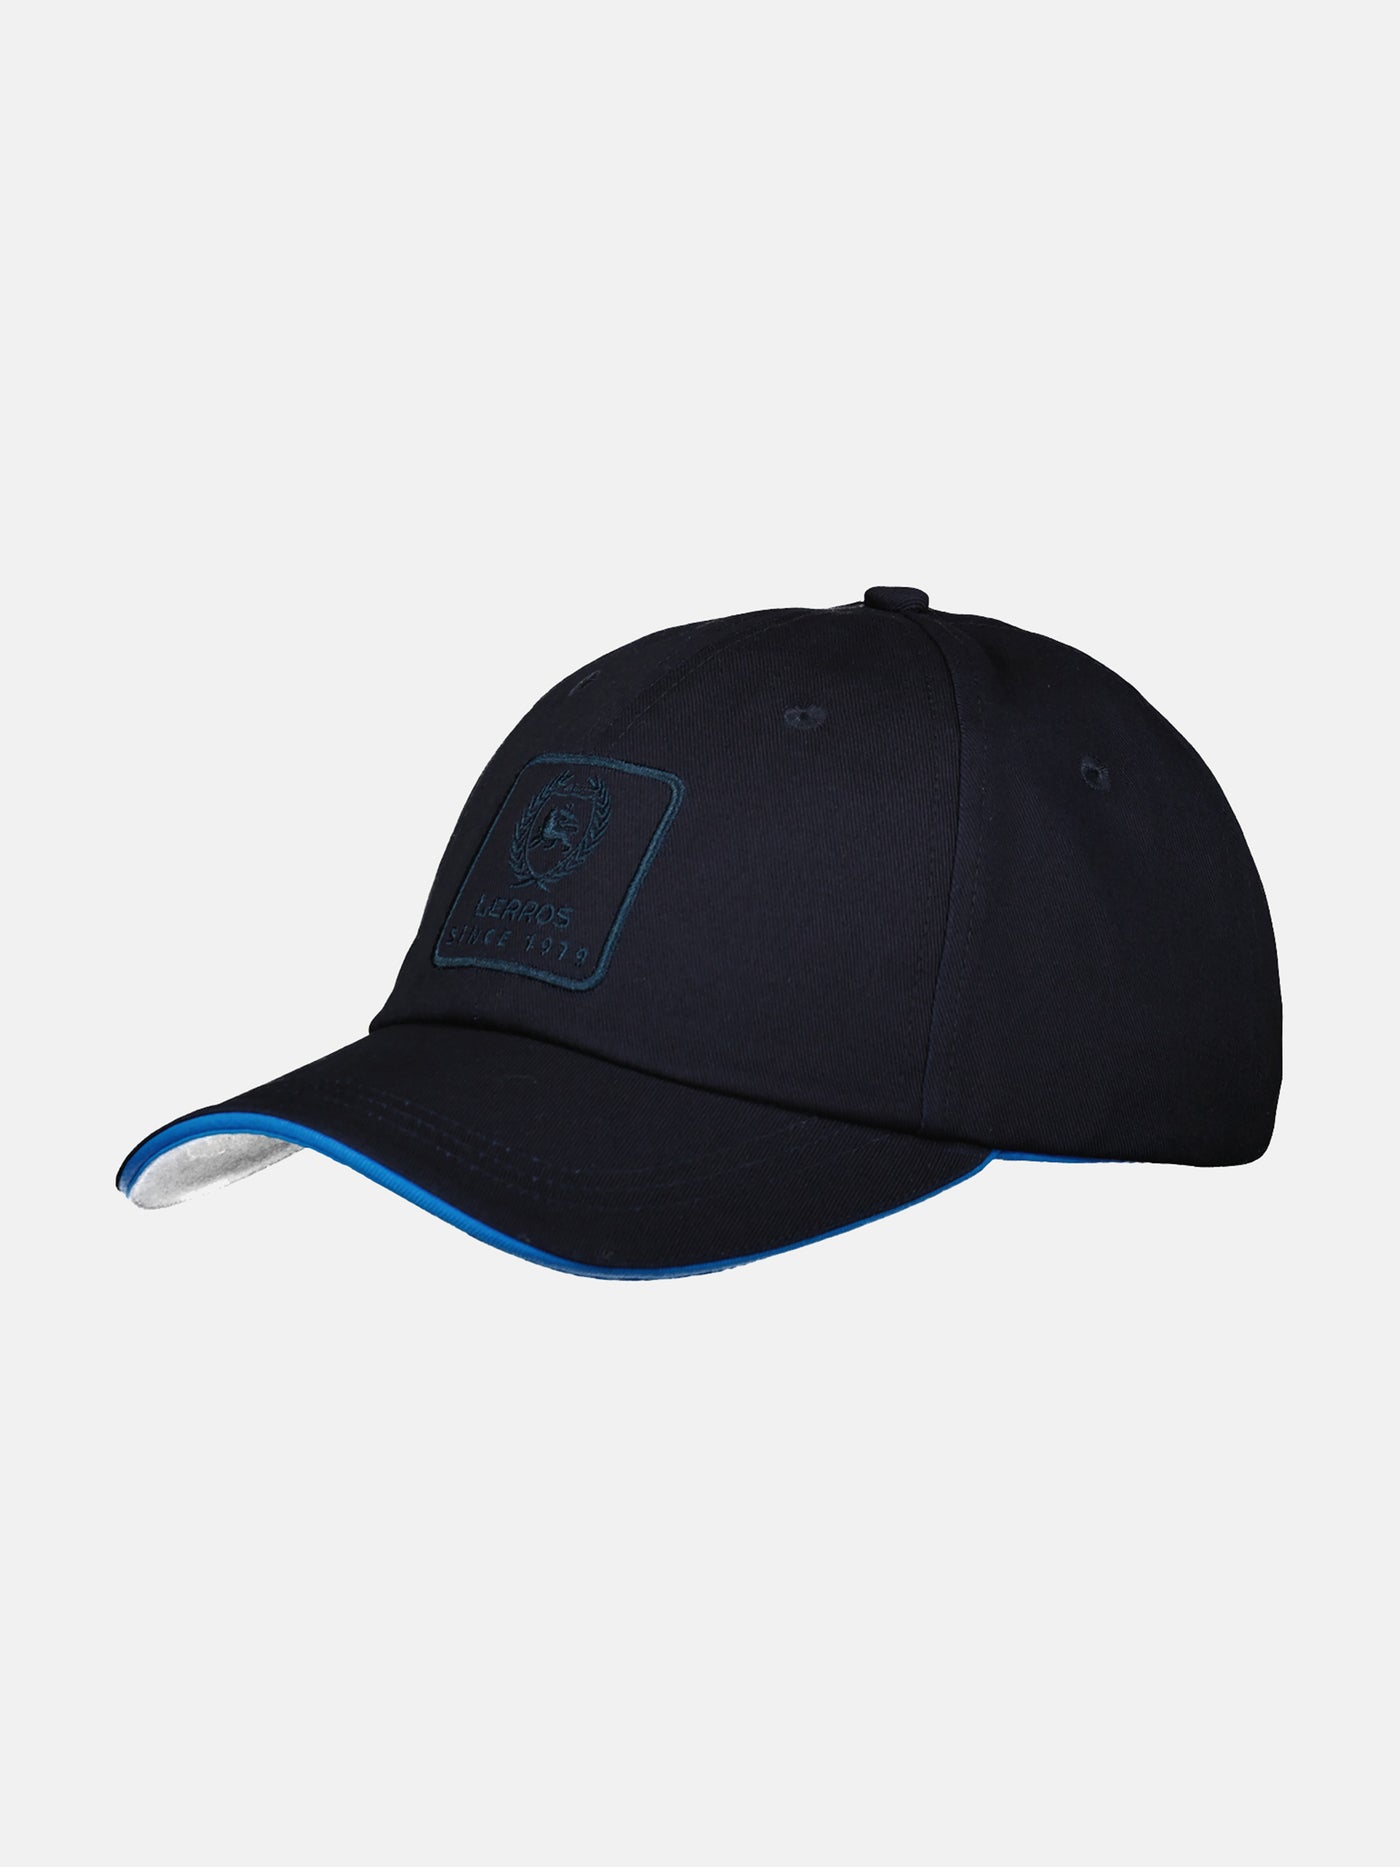 Baseball cap with appliqué